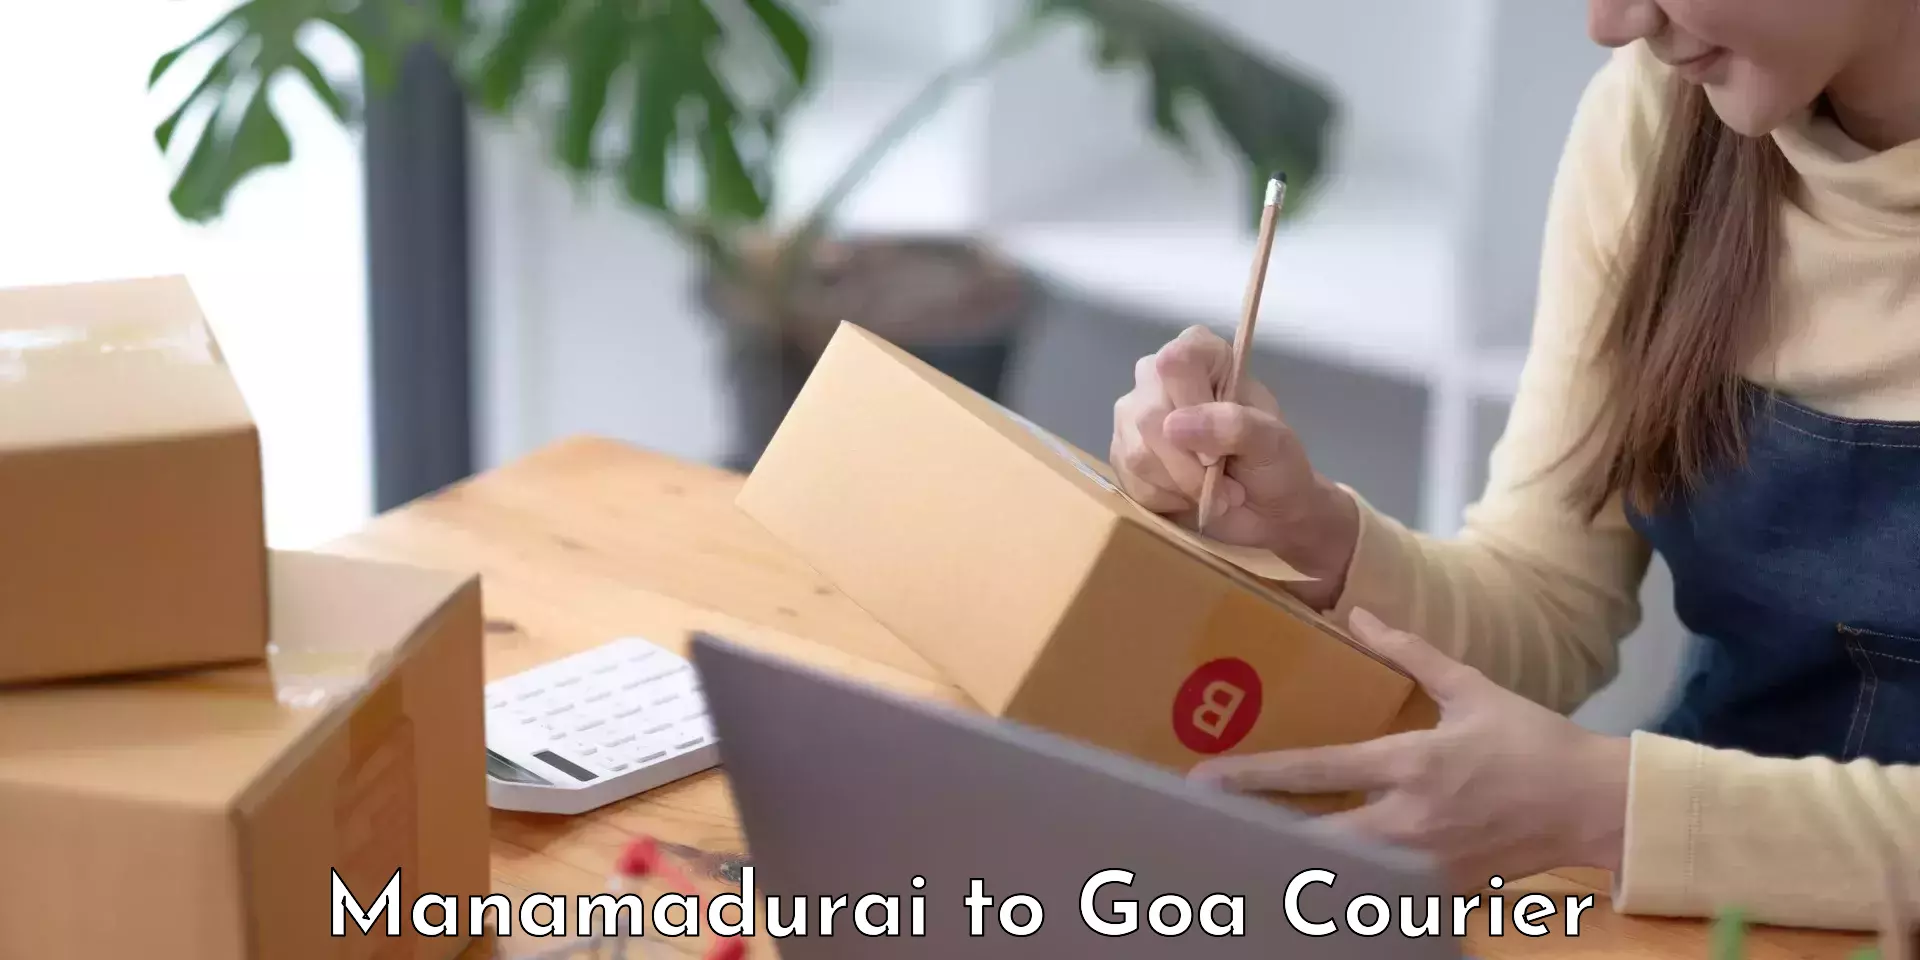 Professional moving company Manamadurai to South Goa